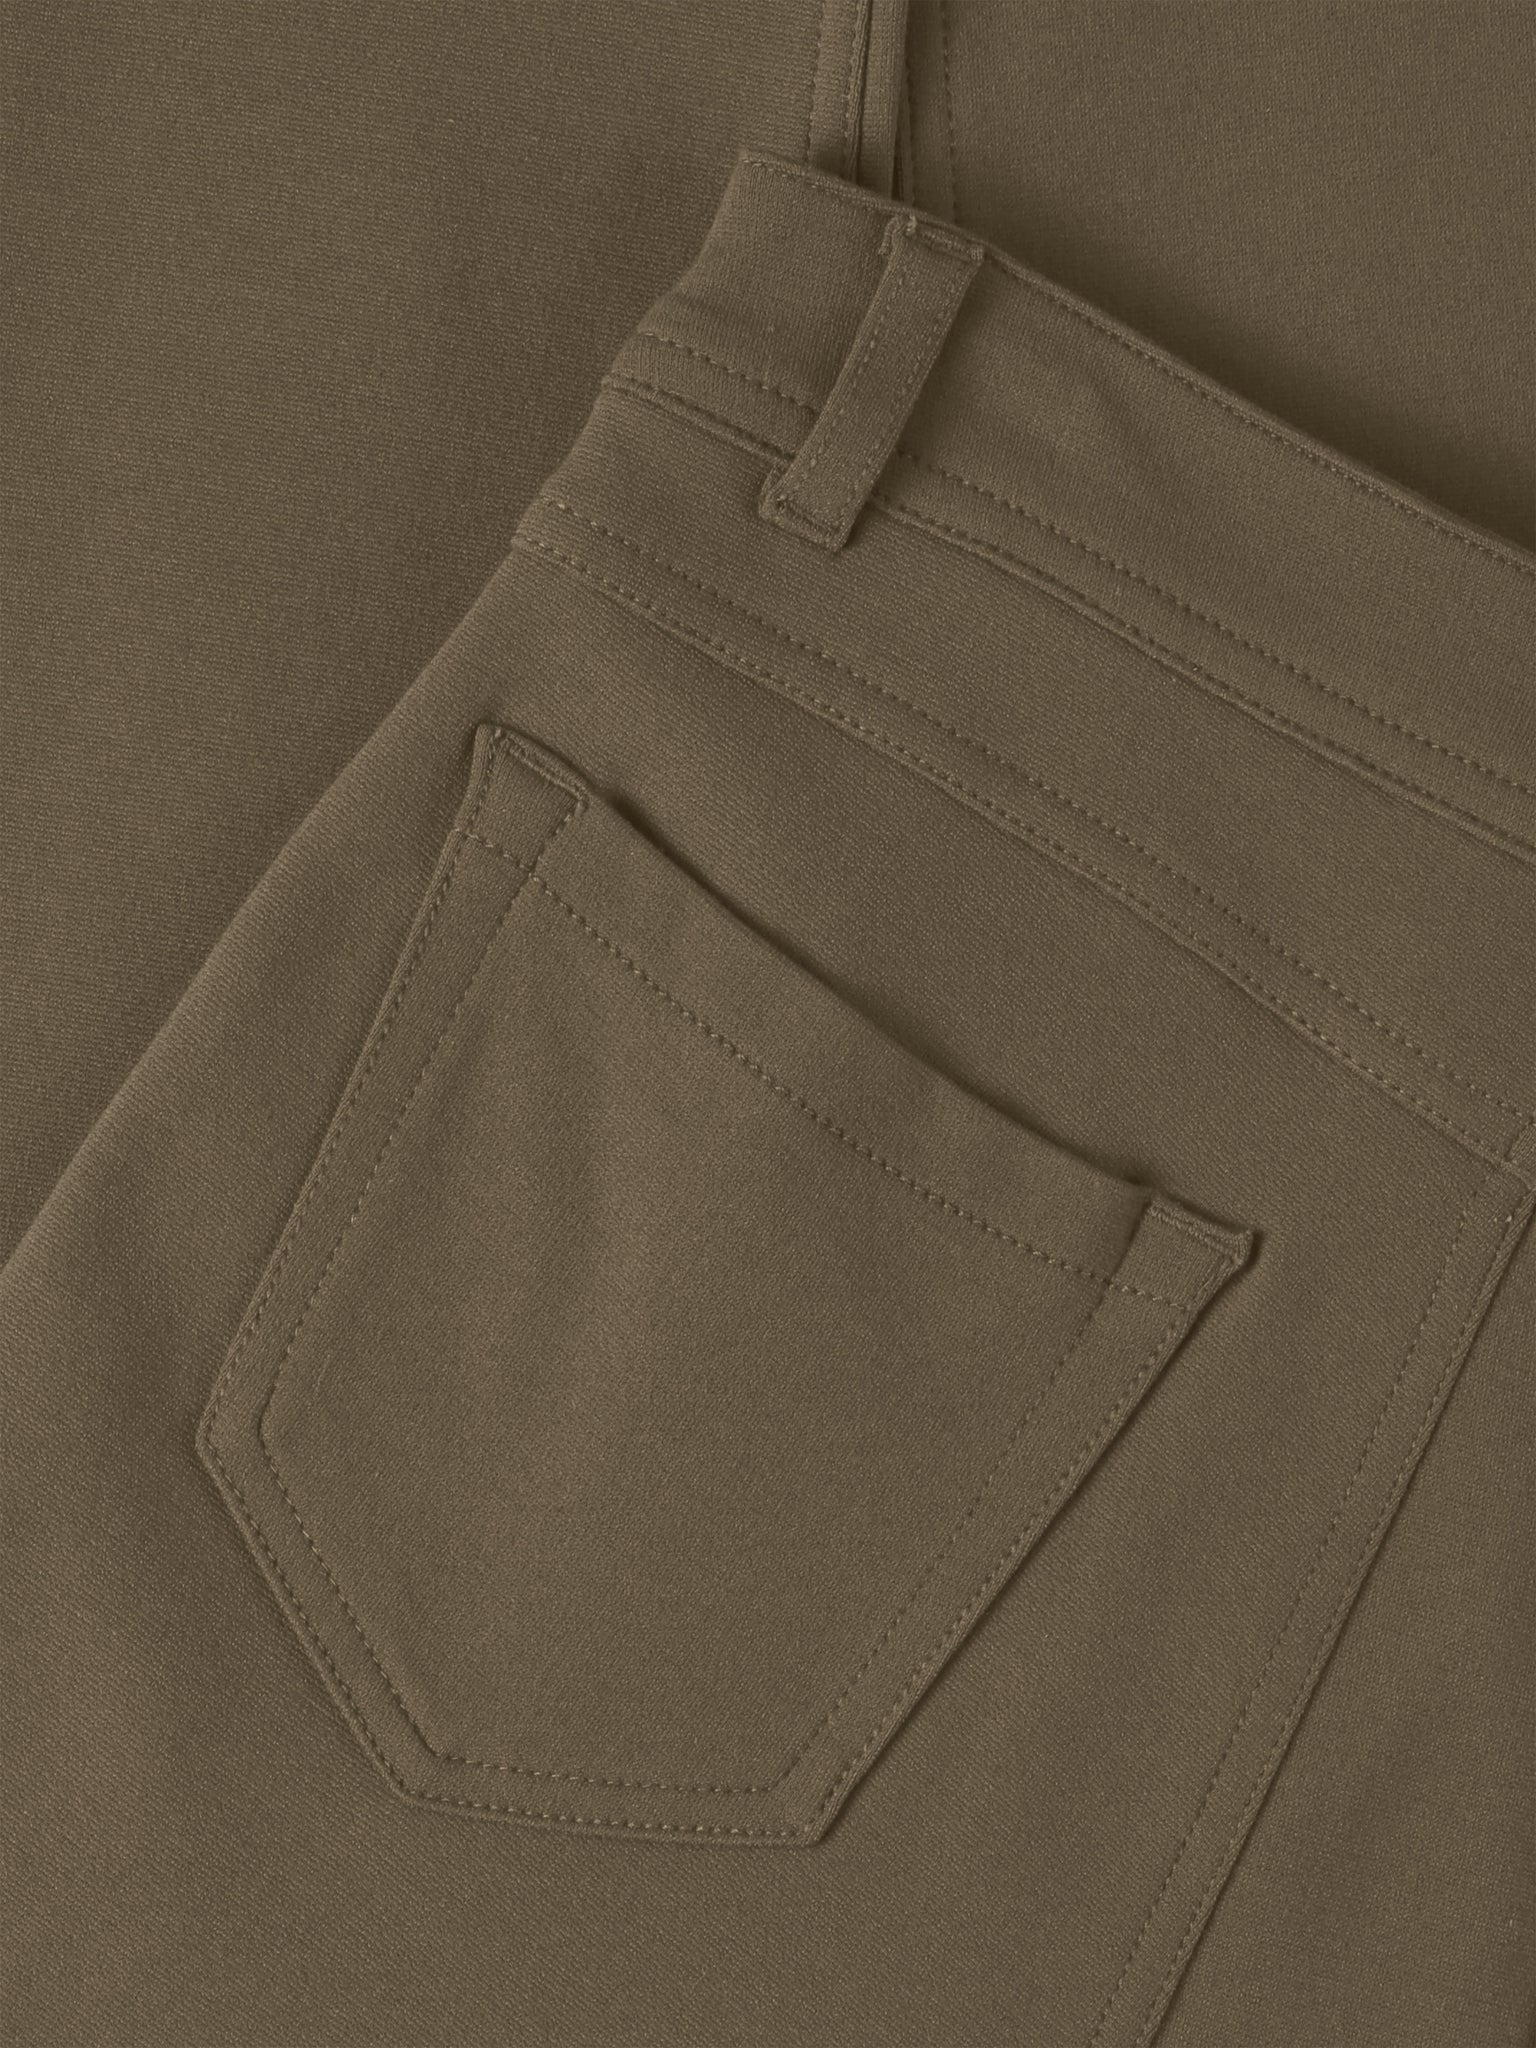 Jeggings Khaki Series – Hopkins Jeans